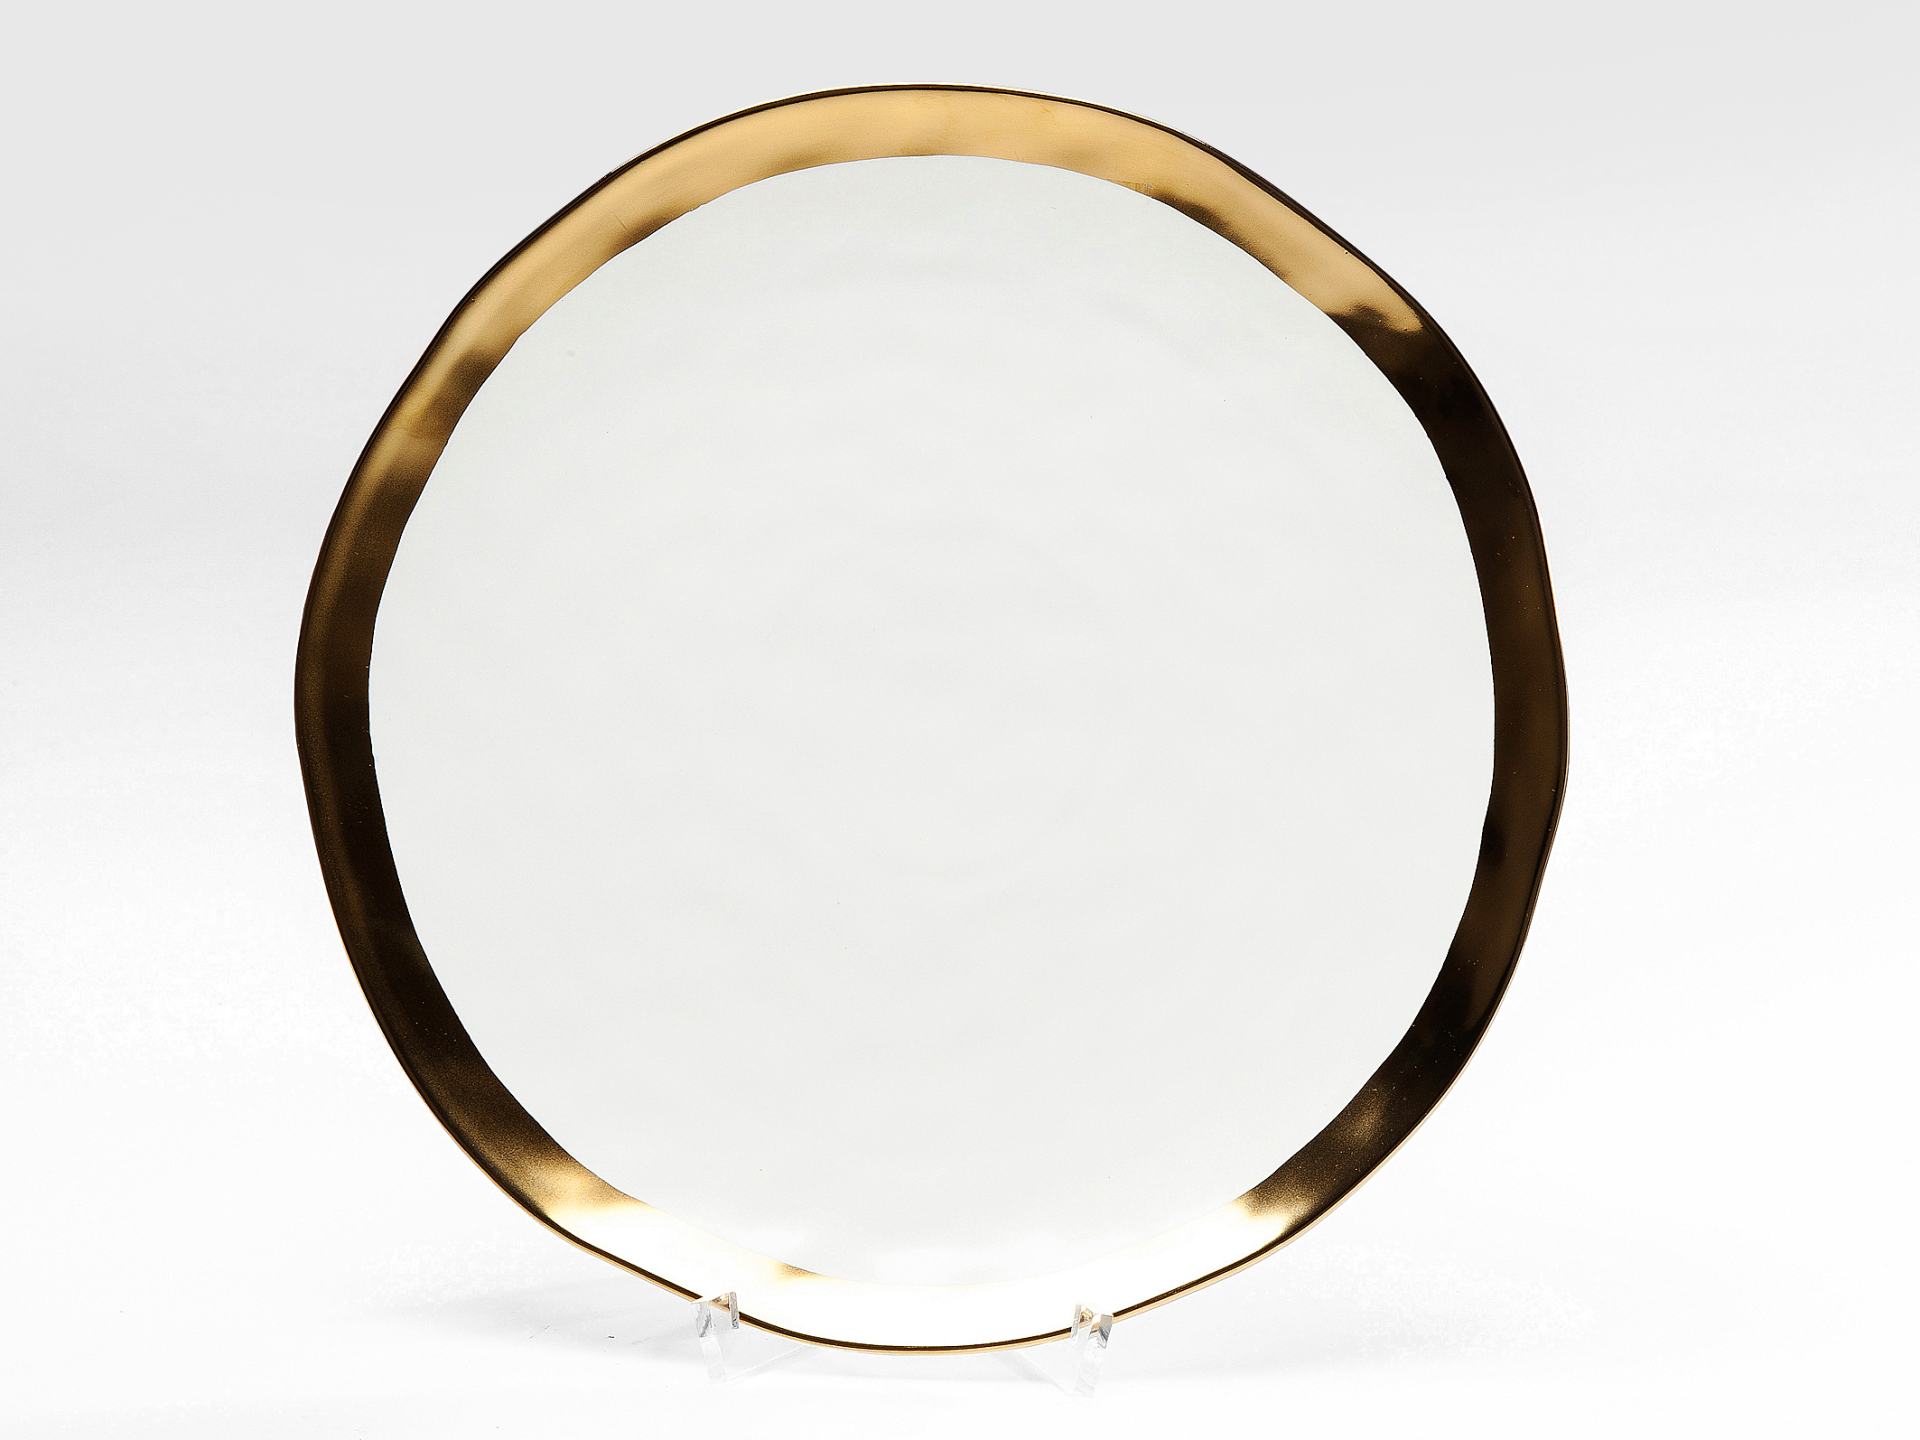 Bell tanier bielo-zlatý Ø31 cm